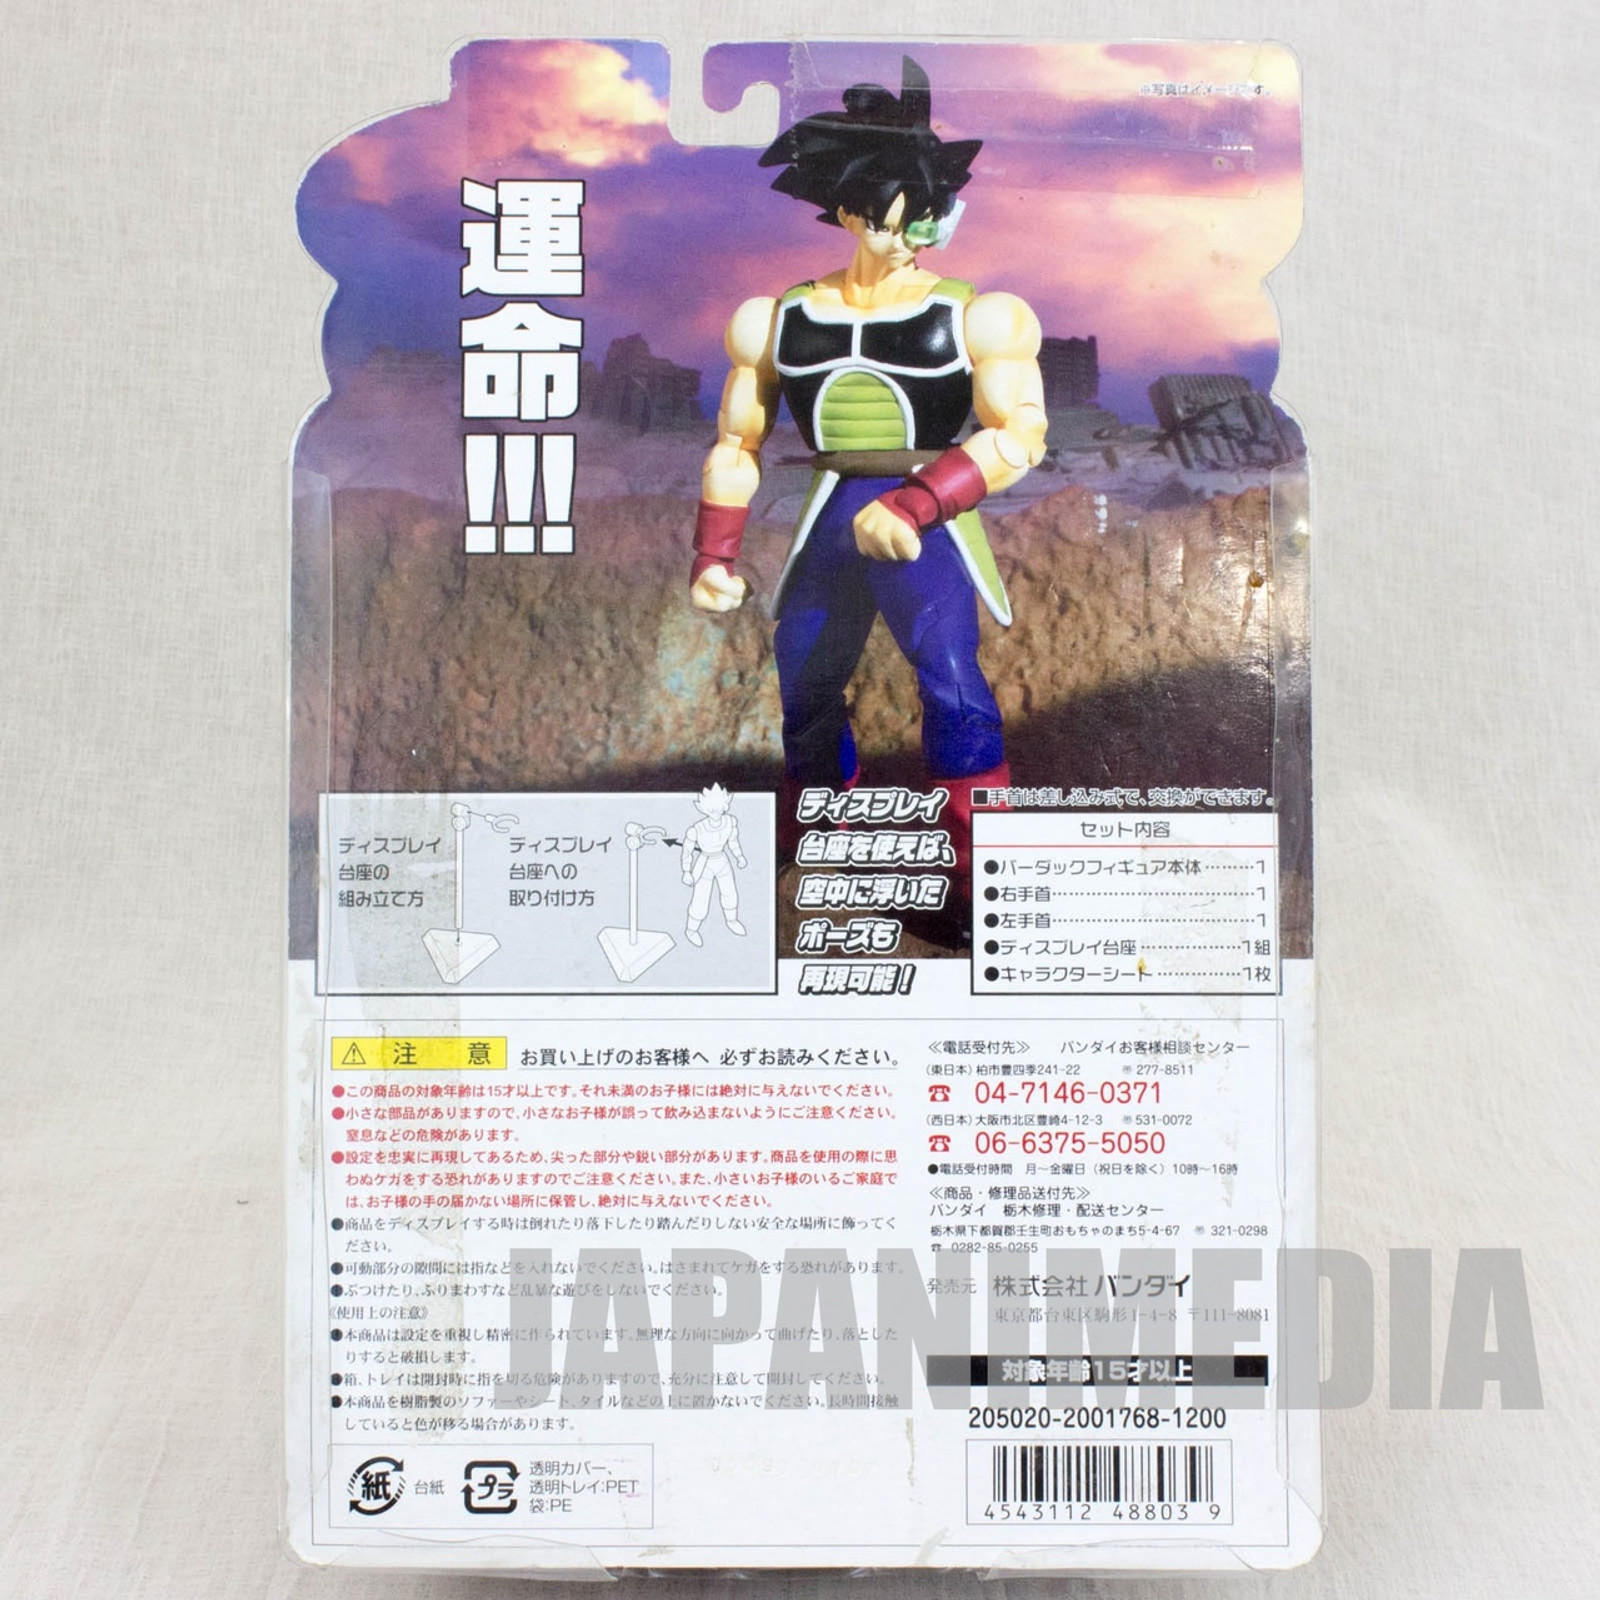 Dragon Ball Z Saiyan Bardock Figure Hybrid Action Choryuden BANDAI JAPAN ANIME